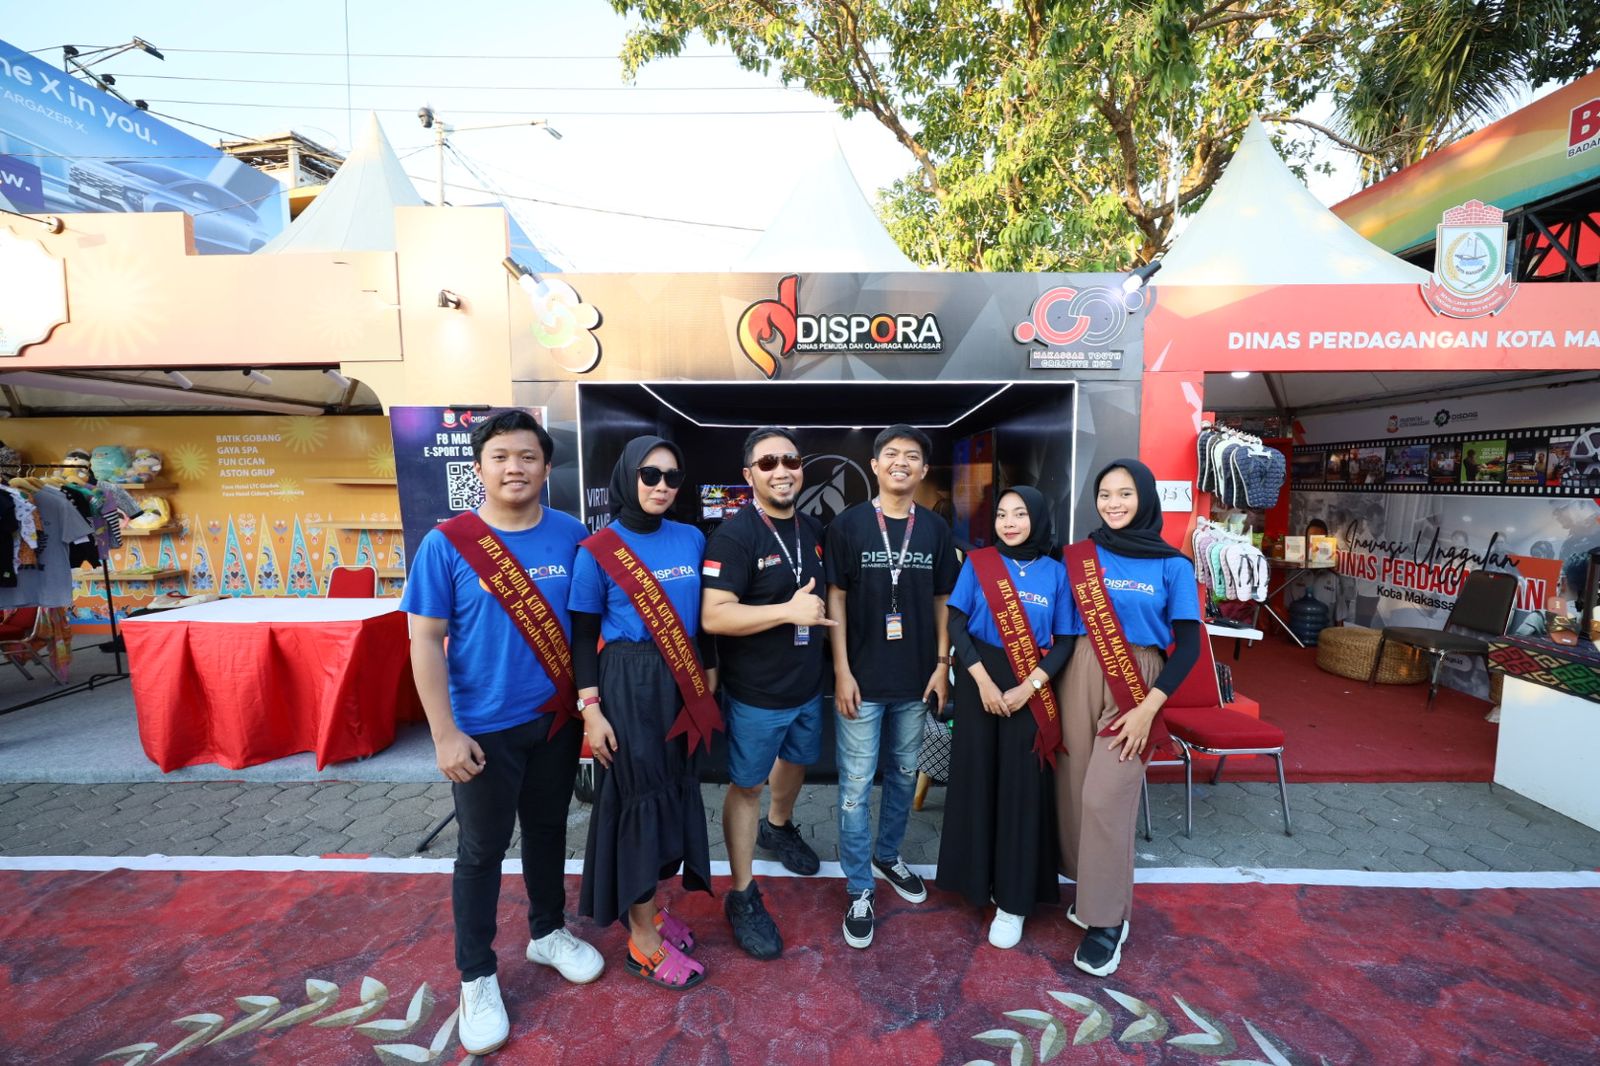 Dinas Pemuda dan Olahraga (Dispora) Kota Makassar menyediakan fasilitas bermain games tradisional berteknologi Virtual Reality (VR) dan Augmented Reality (AR) di Makassar Festival F8